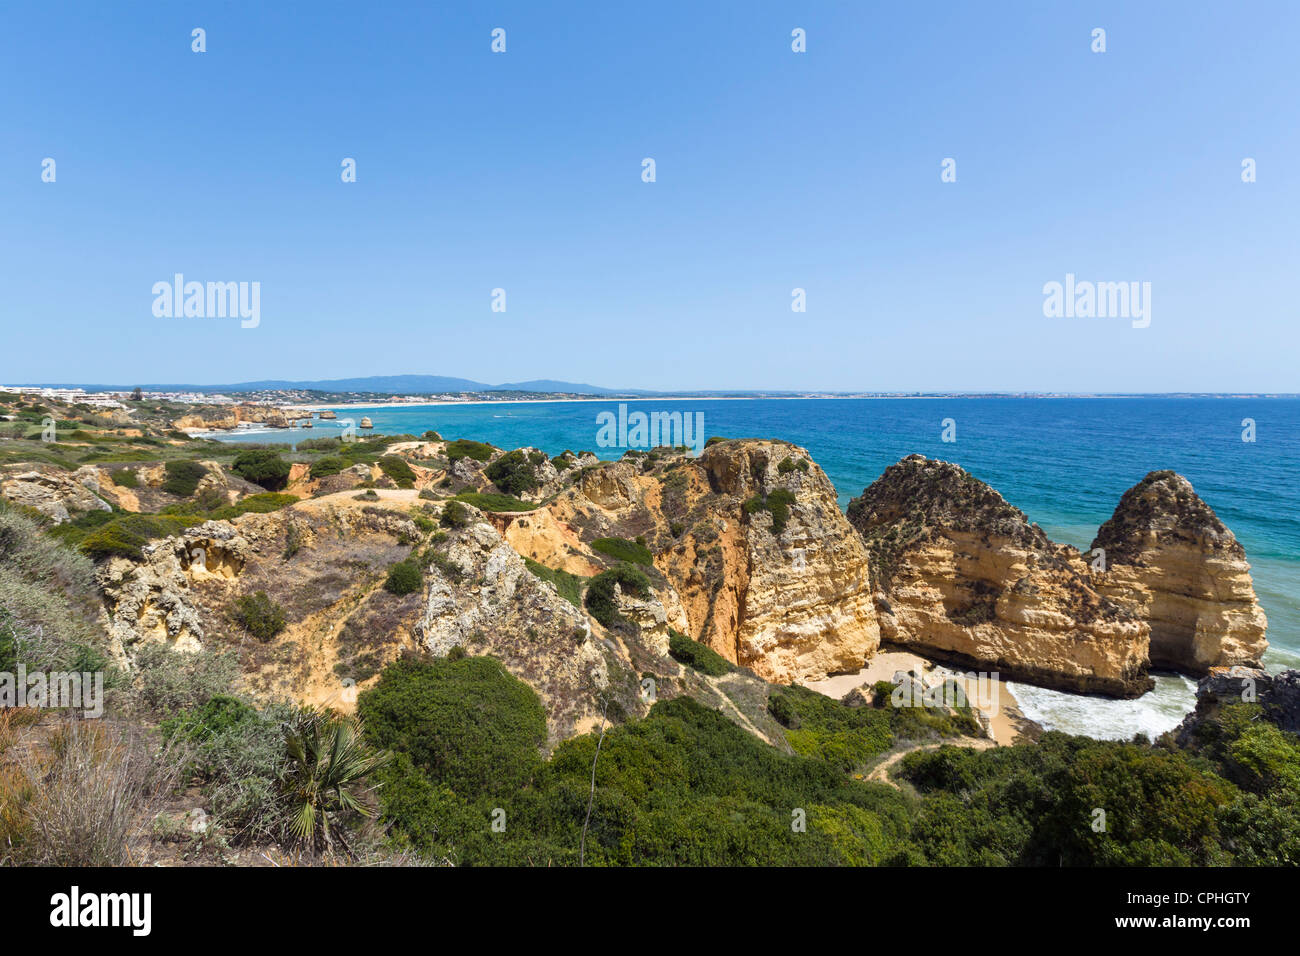 Afficher le long de la côte de Ponta da Piedade près de Lagos, Algarve, Portugal Banque D'Images